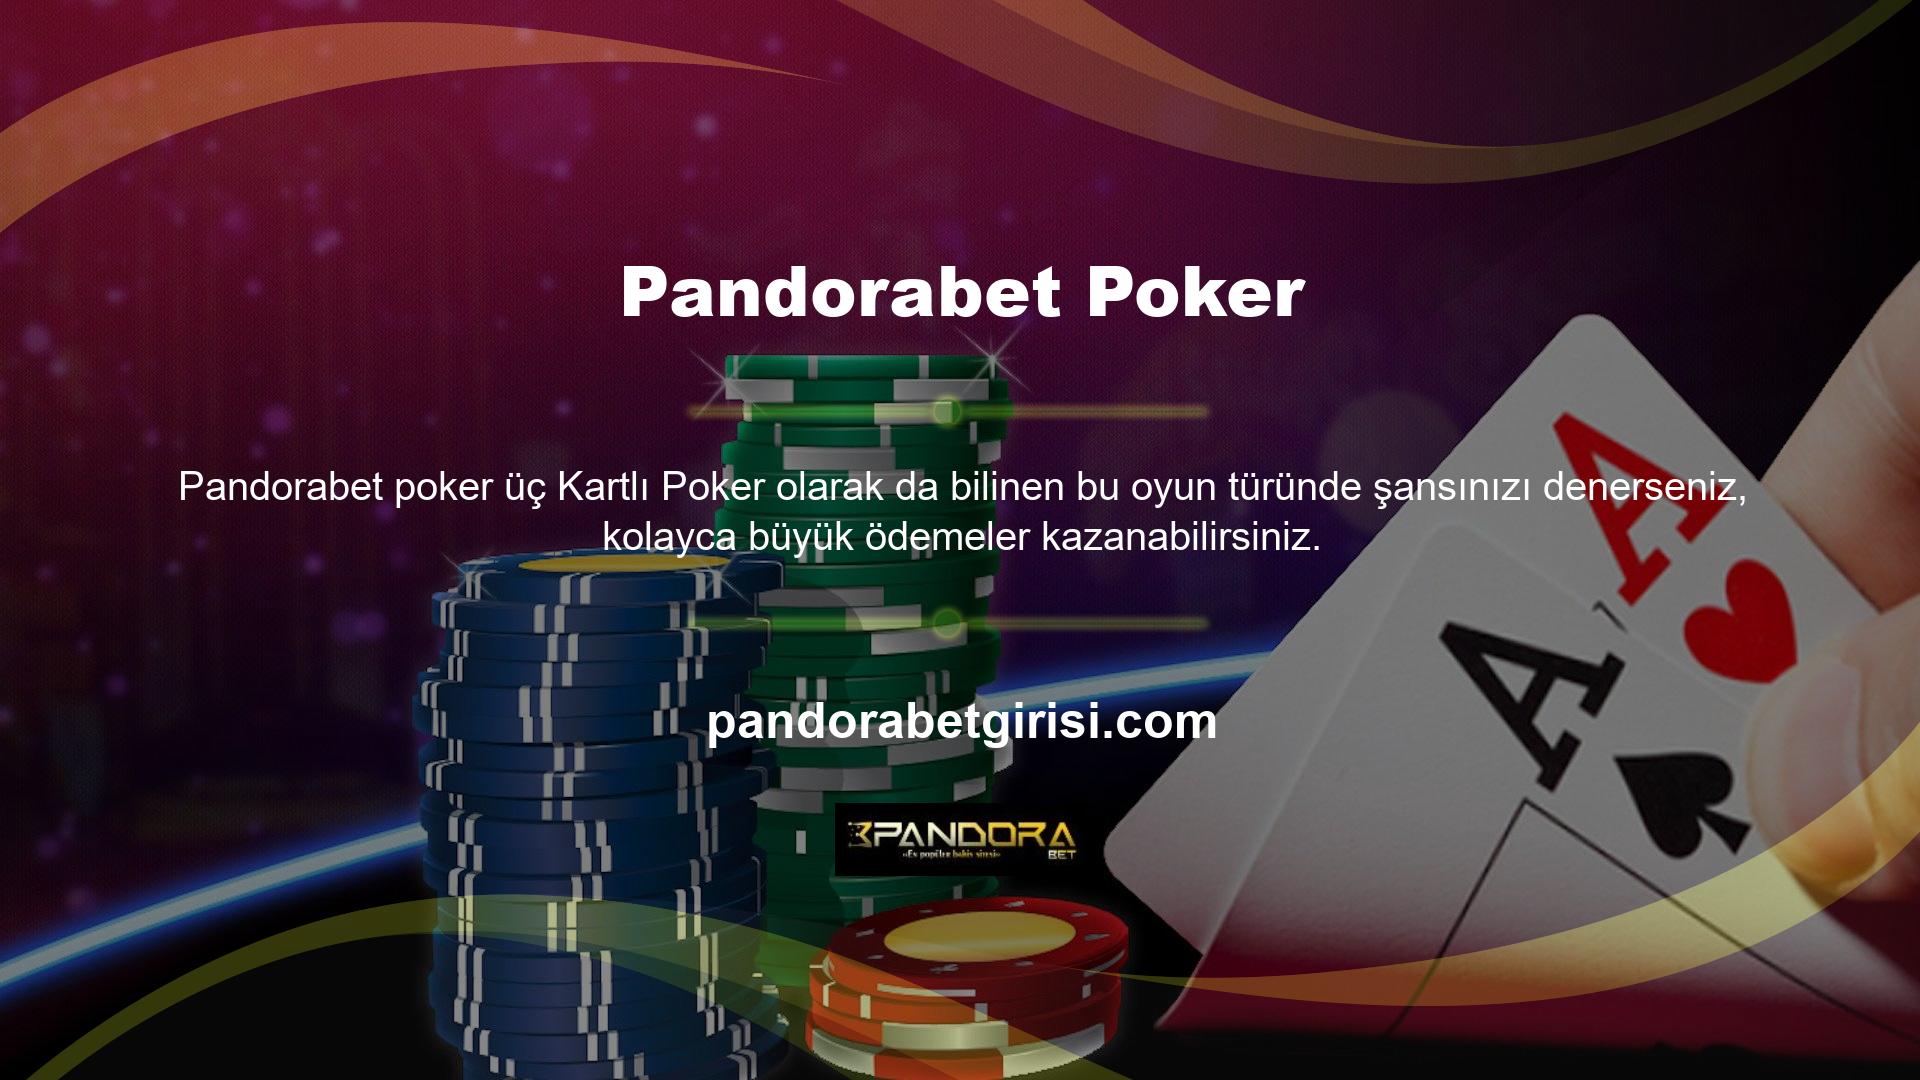 Pandorabet Texas Hold'em, Pandorabet Texas Hold'em Canlı Casino hizmetinin X-Pro Oyun programı tarafından sunulan oyunlardan biridir